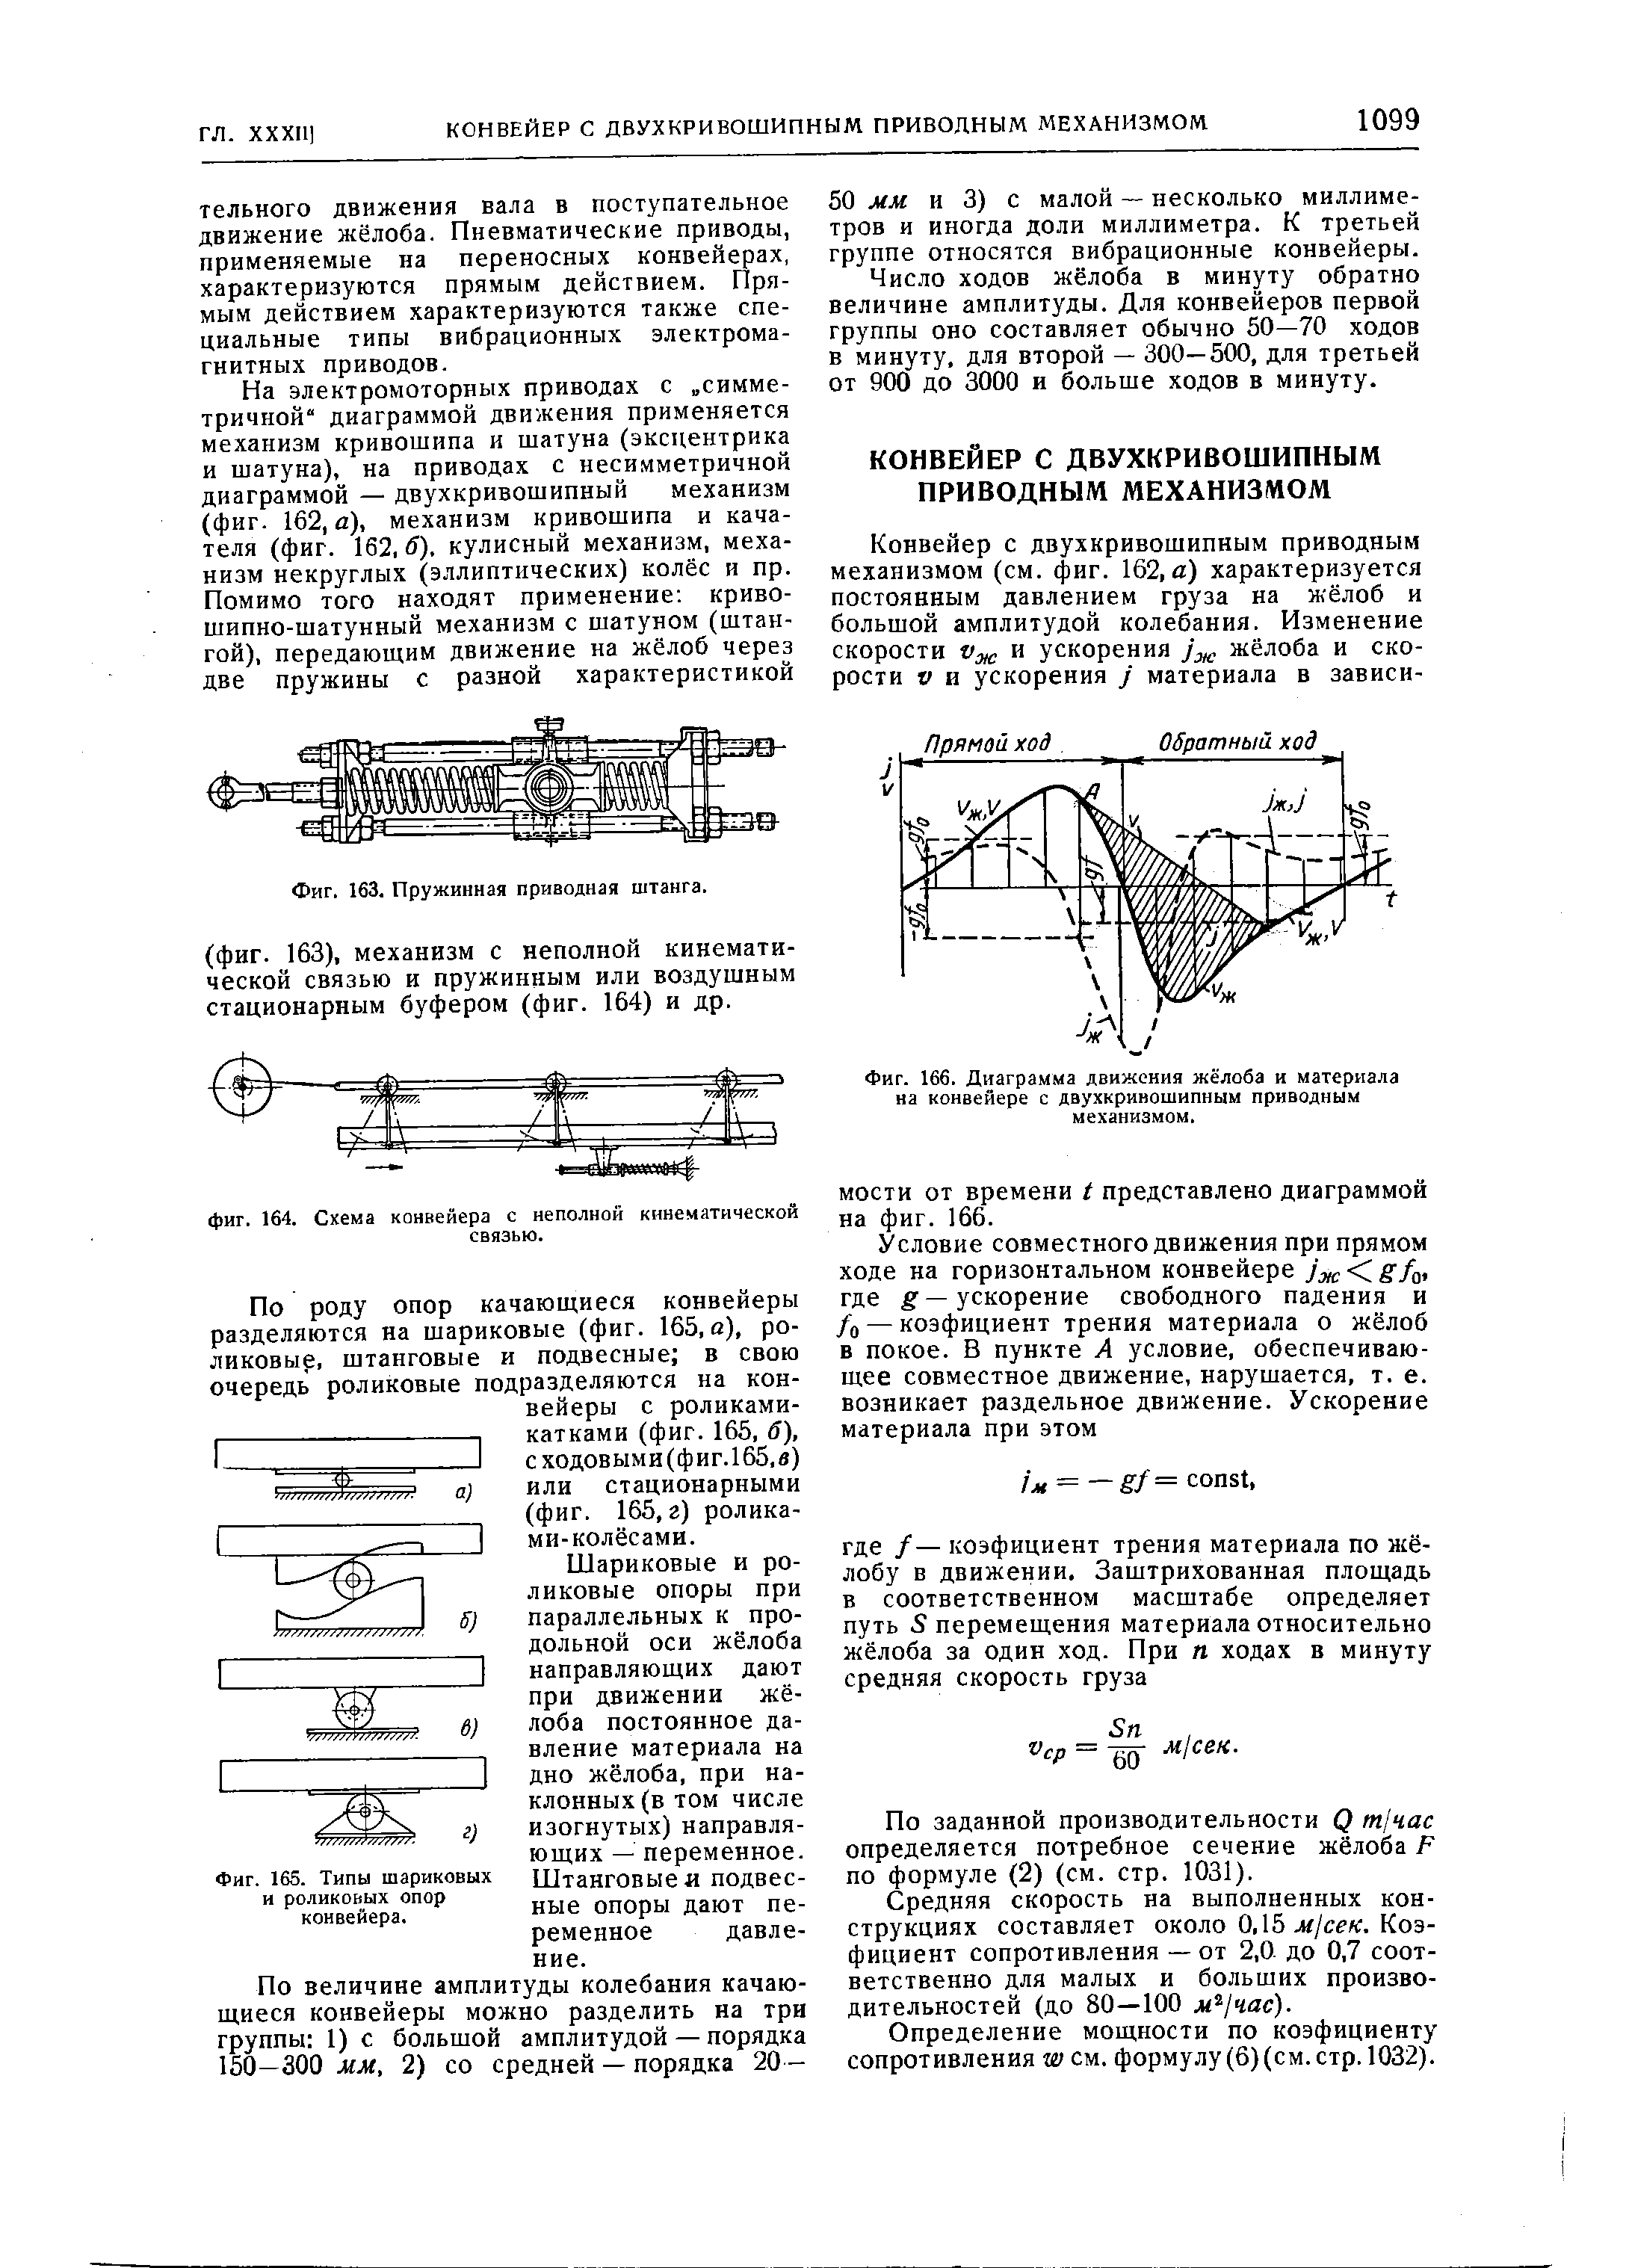 Фиг. 165. Типы шариковых и роликовых опор конвейера.
